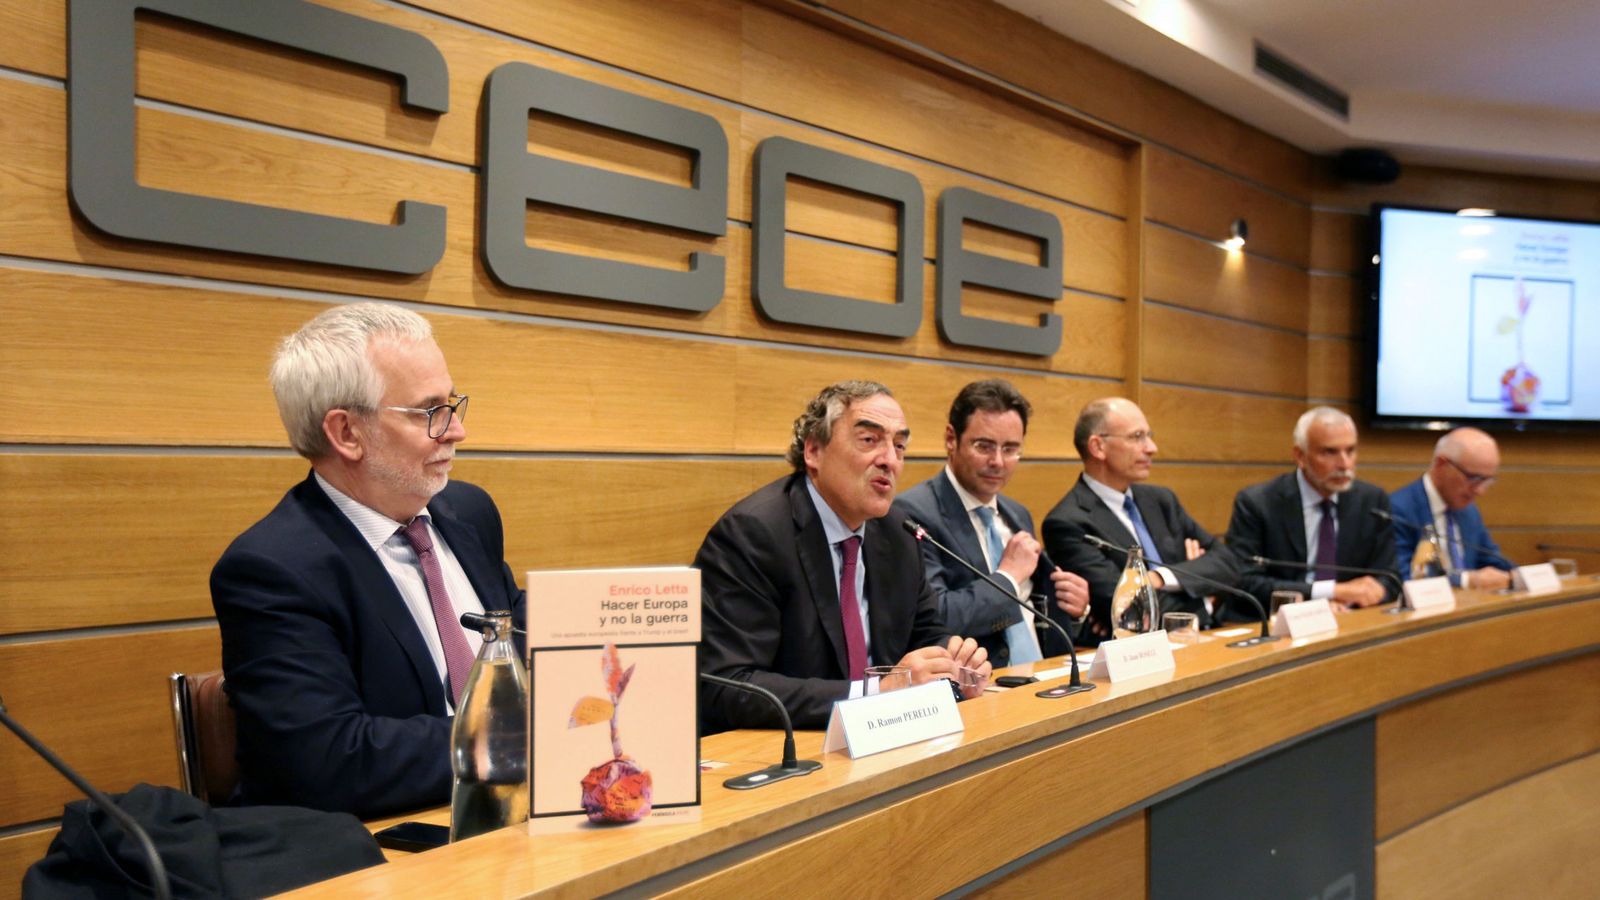 Foto: El presidente de la CEOE, Juan Rosell, en la presentación del libro 'Hacer Europa y no la guerra'. (EFE)